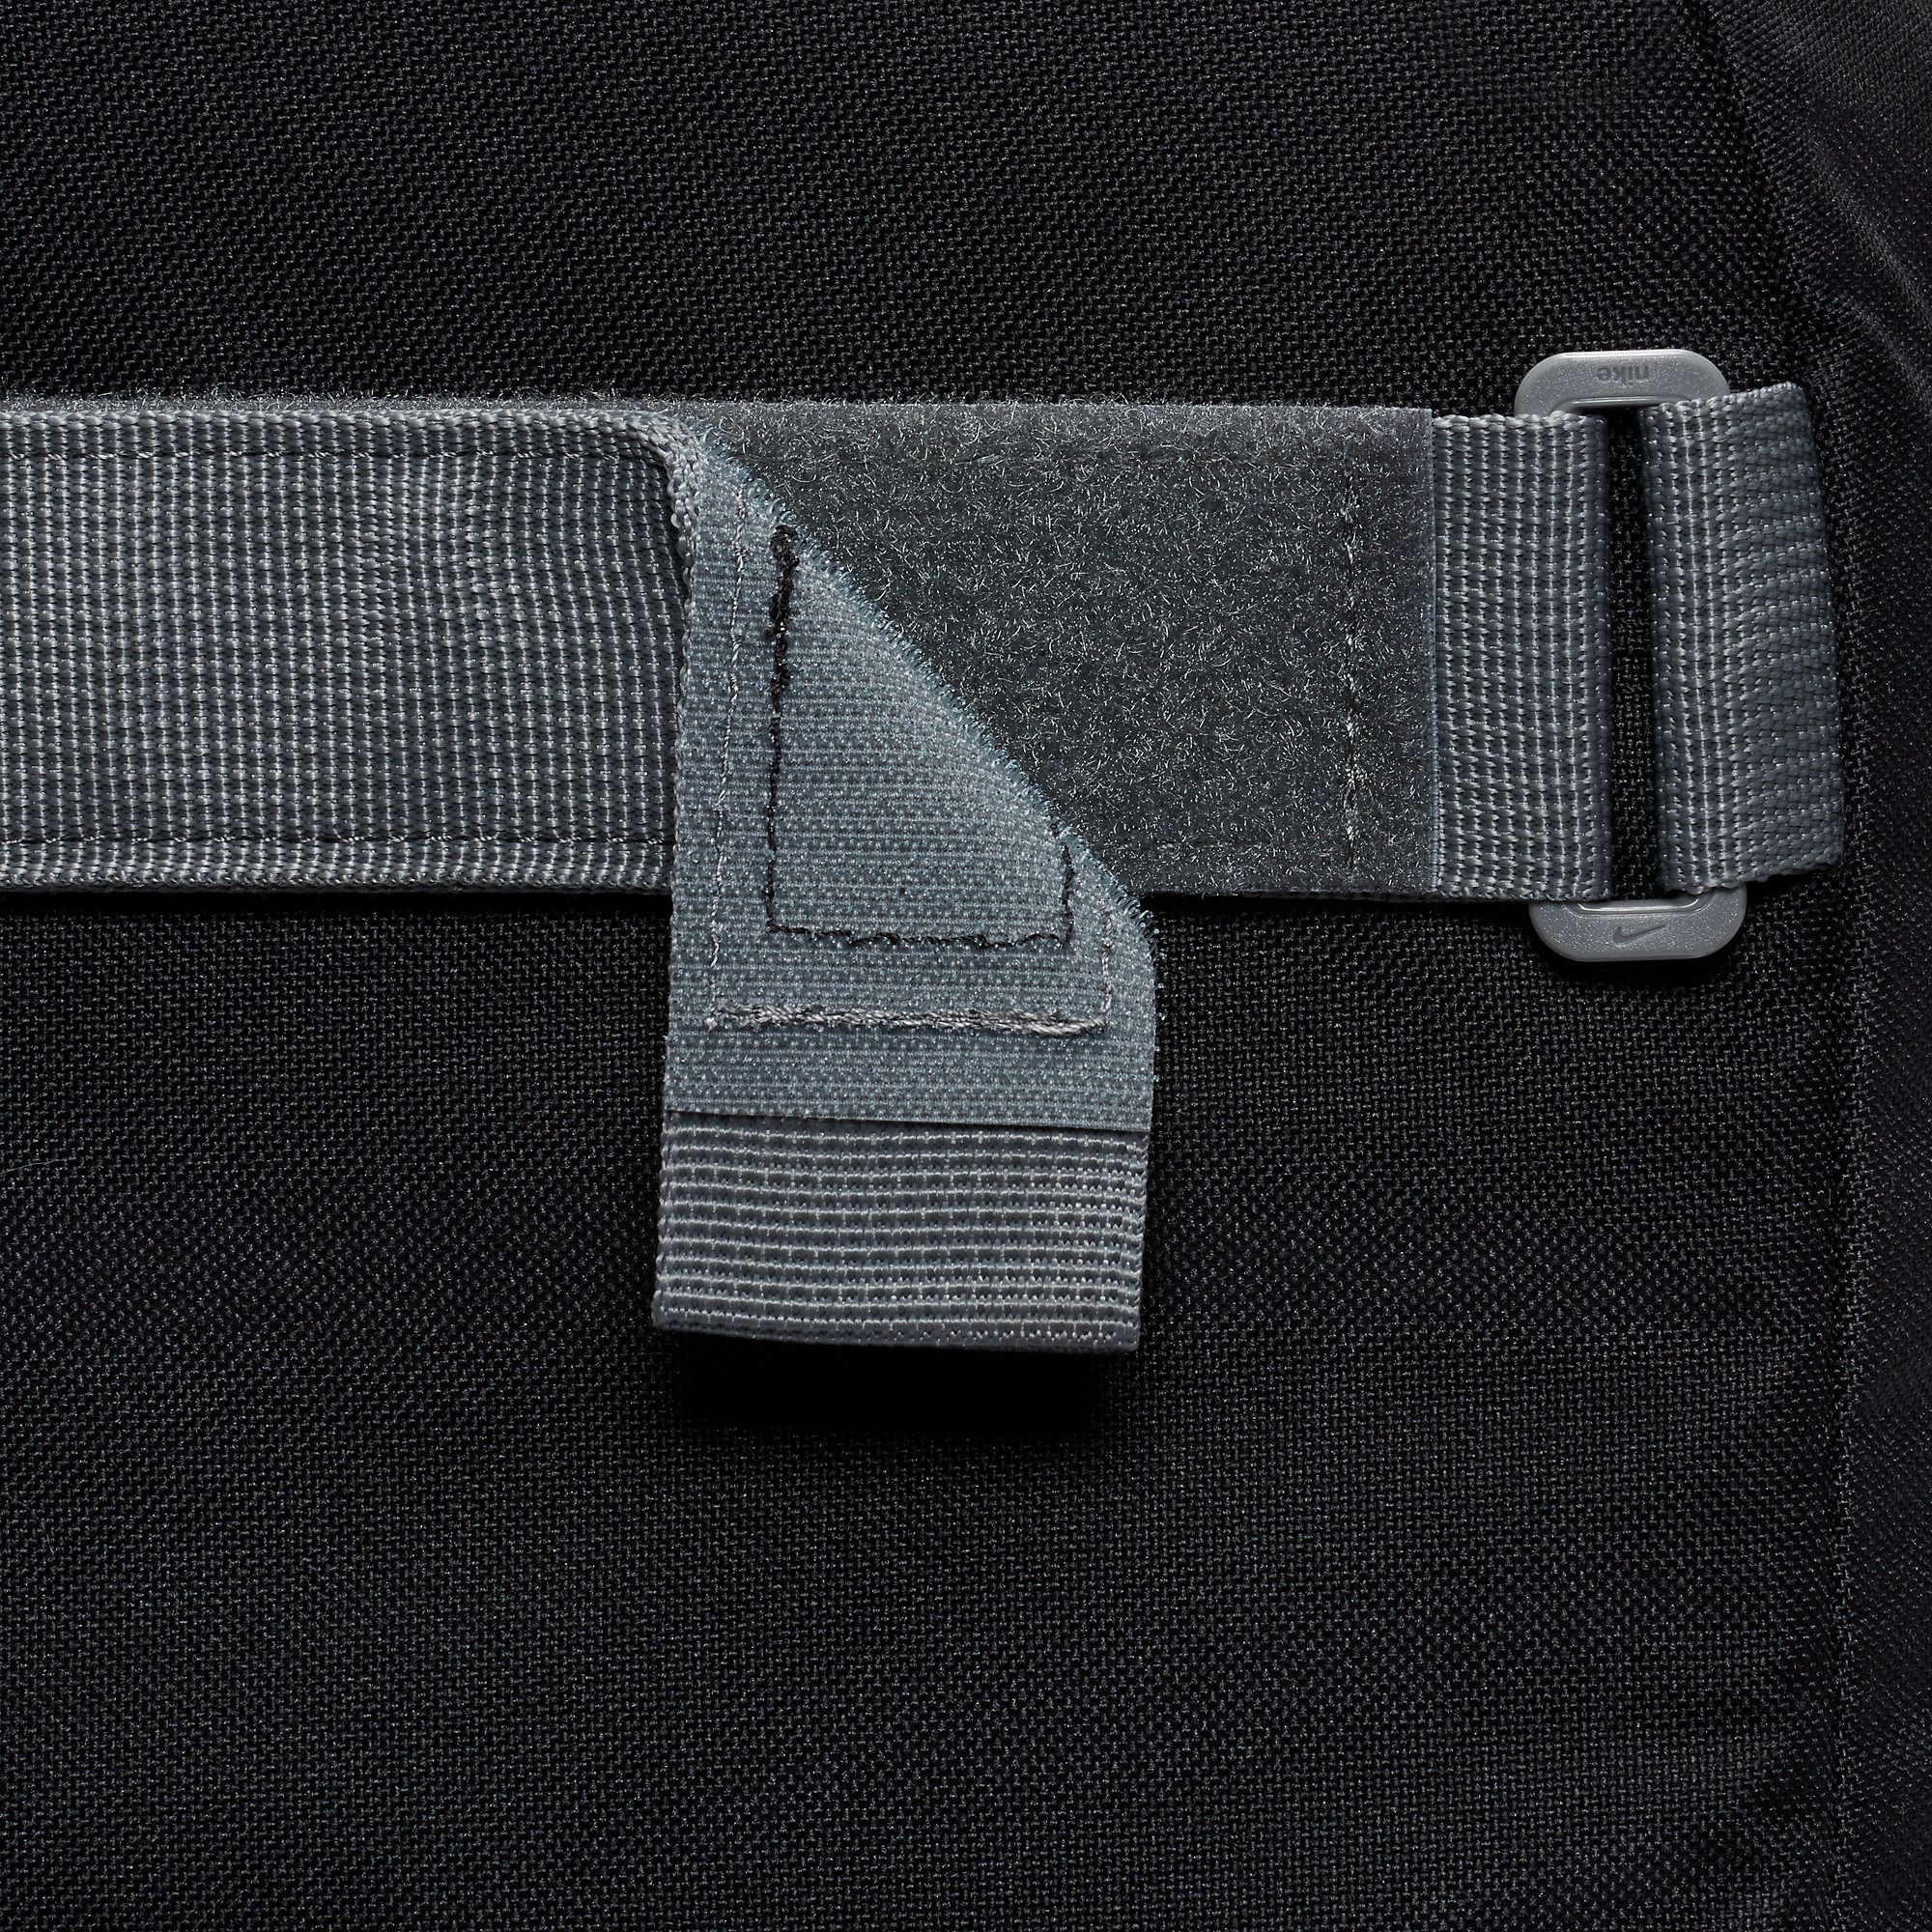  Nike SB Courthouse Backpack - Black/Grey 